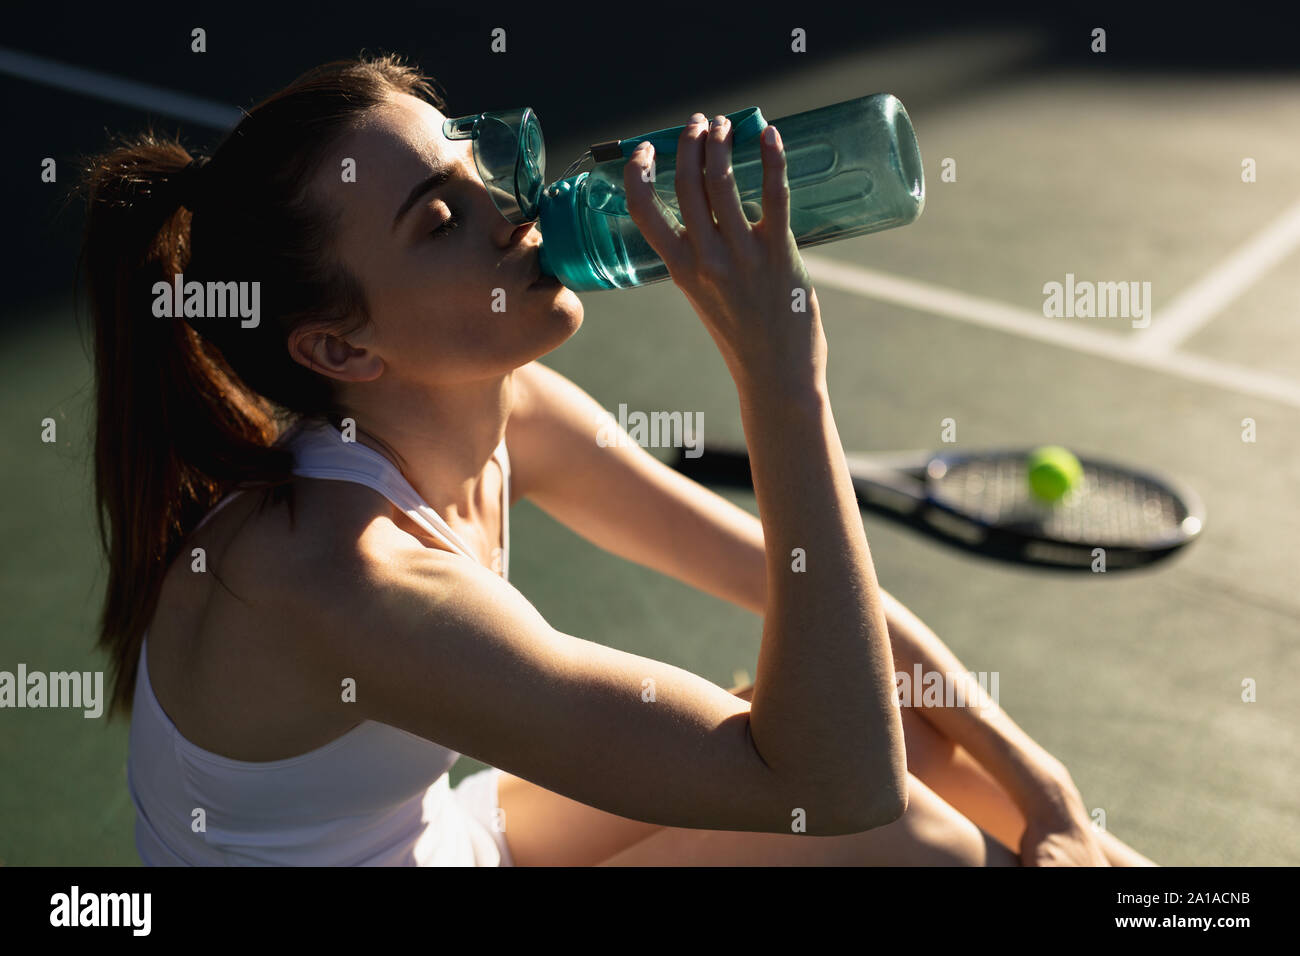 Femme l'eau potable au cours d'un jeu de tennis Banque D'Images